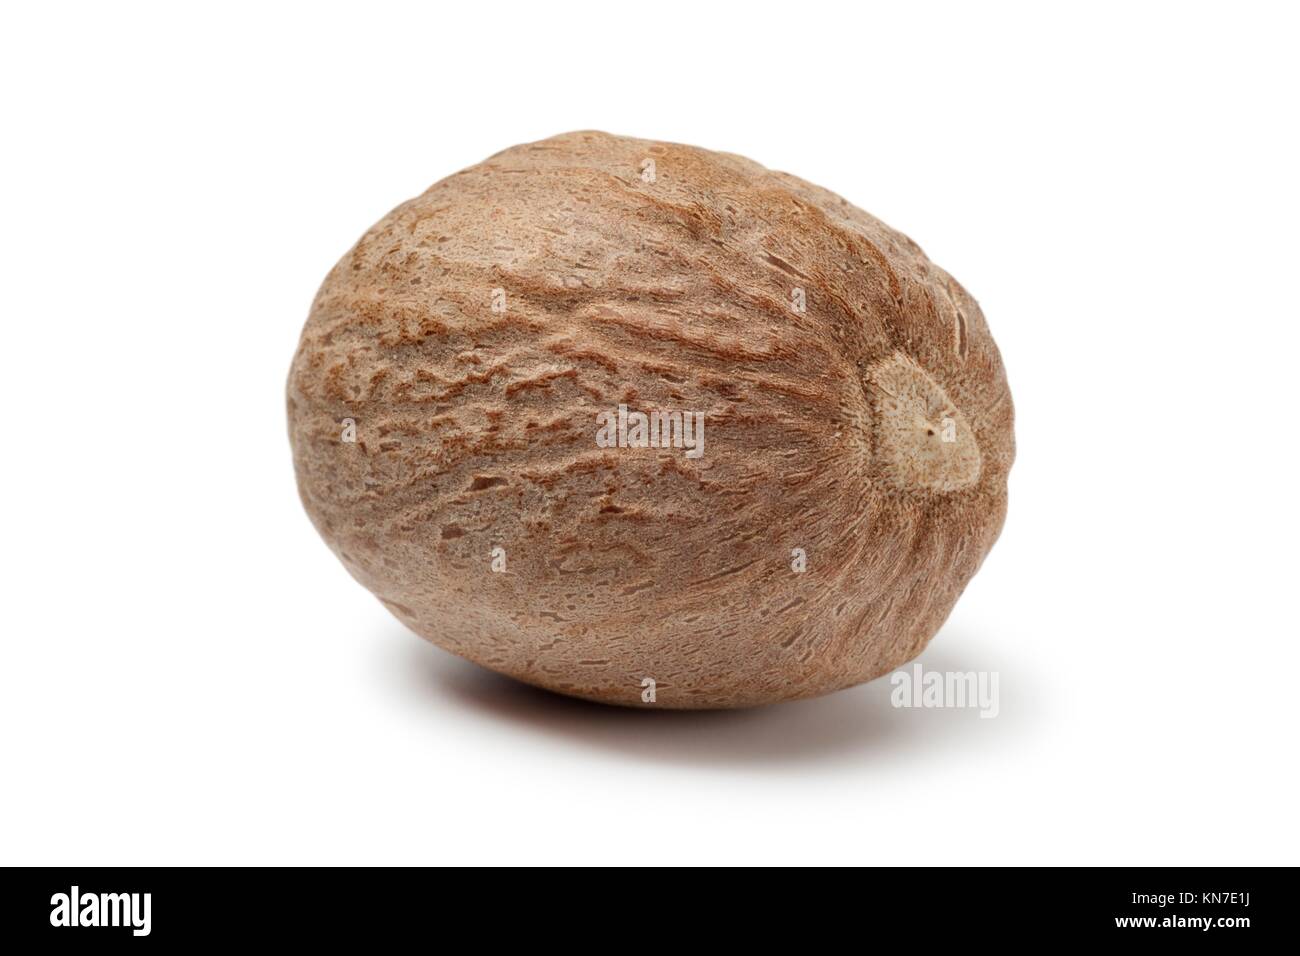 Single nutmeg kernel on white background. Stock Photo